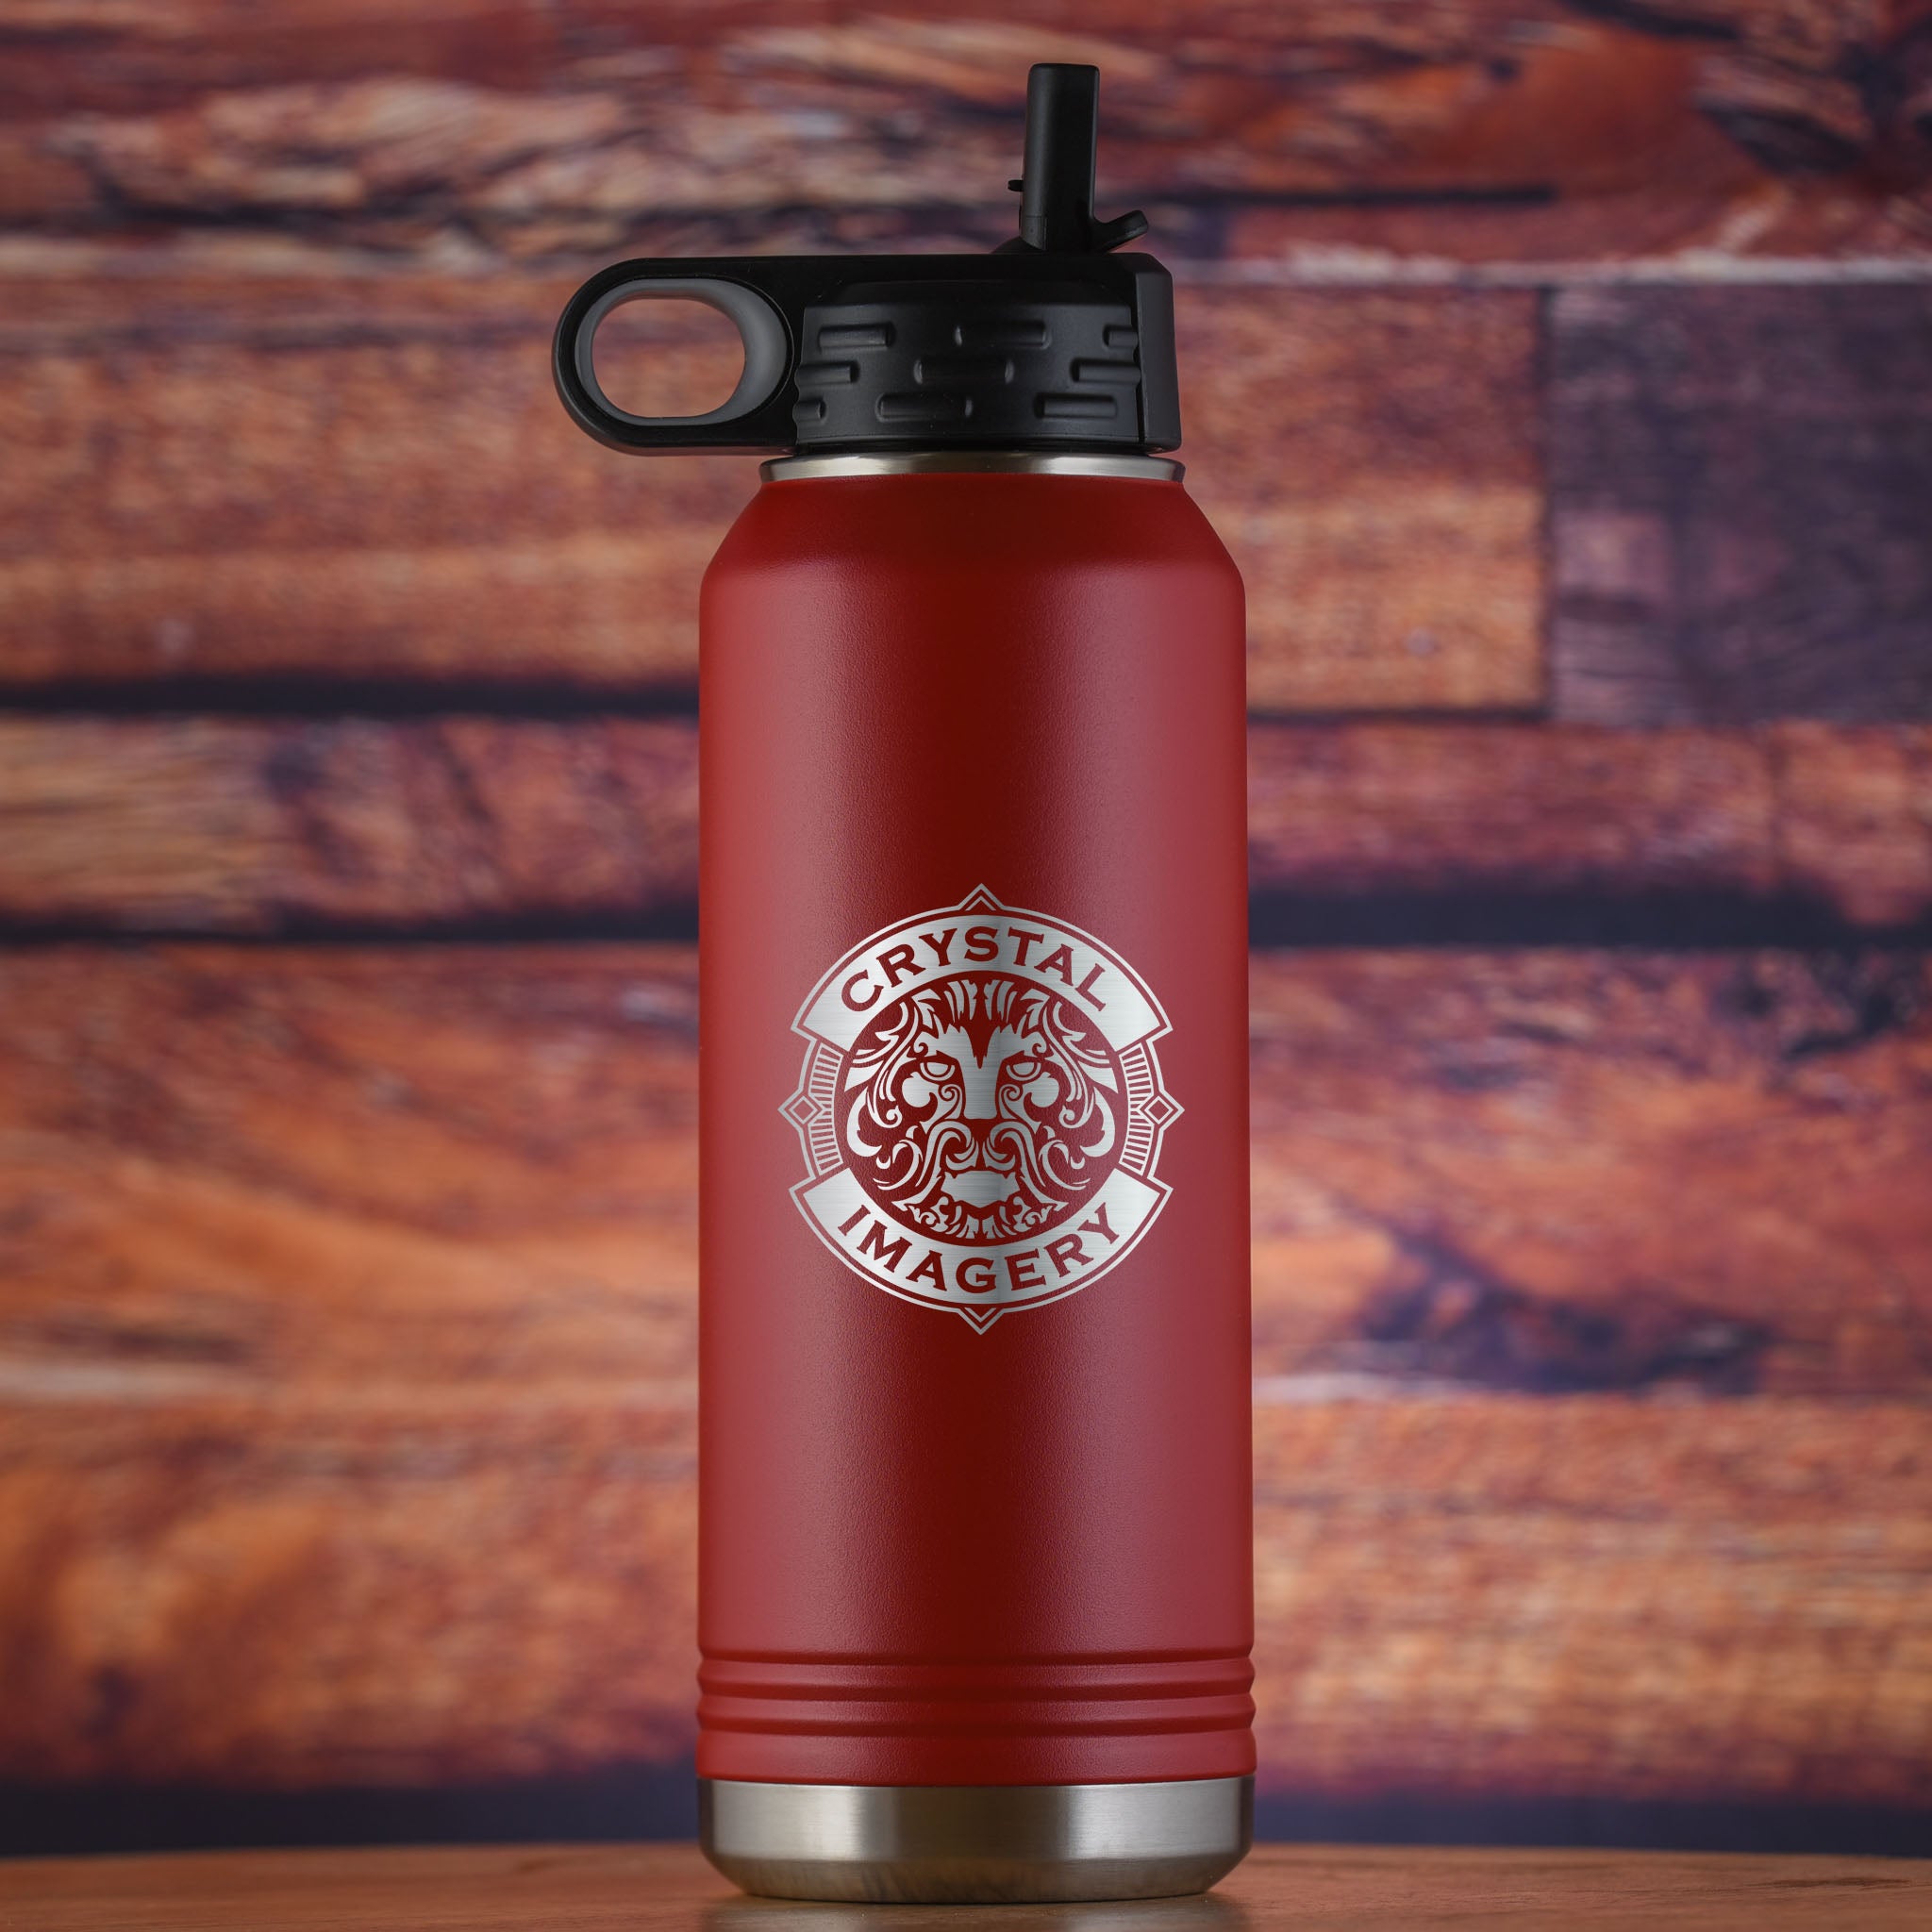 Hydro Flask 20 Oz Coffee Tumbler Engraved Logo